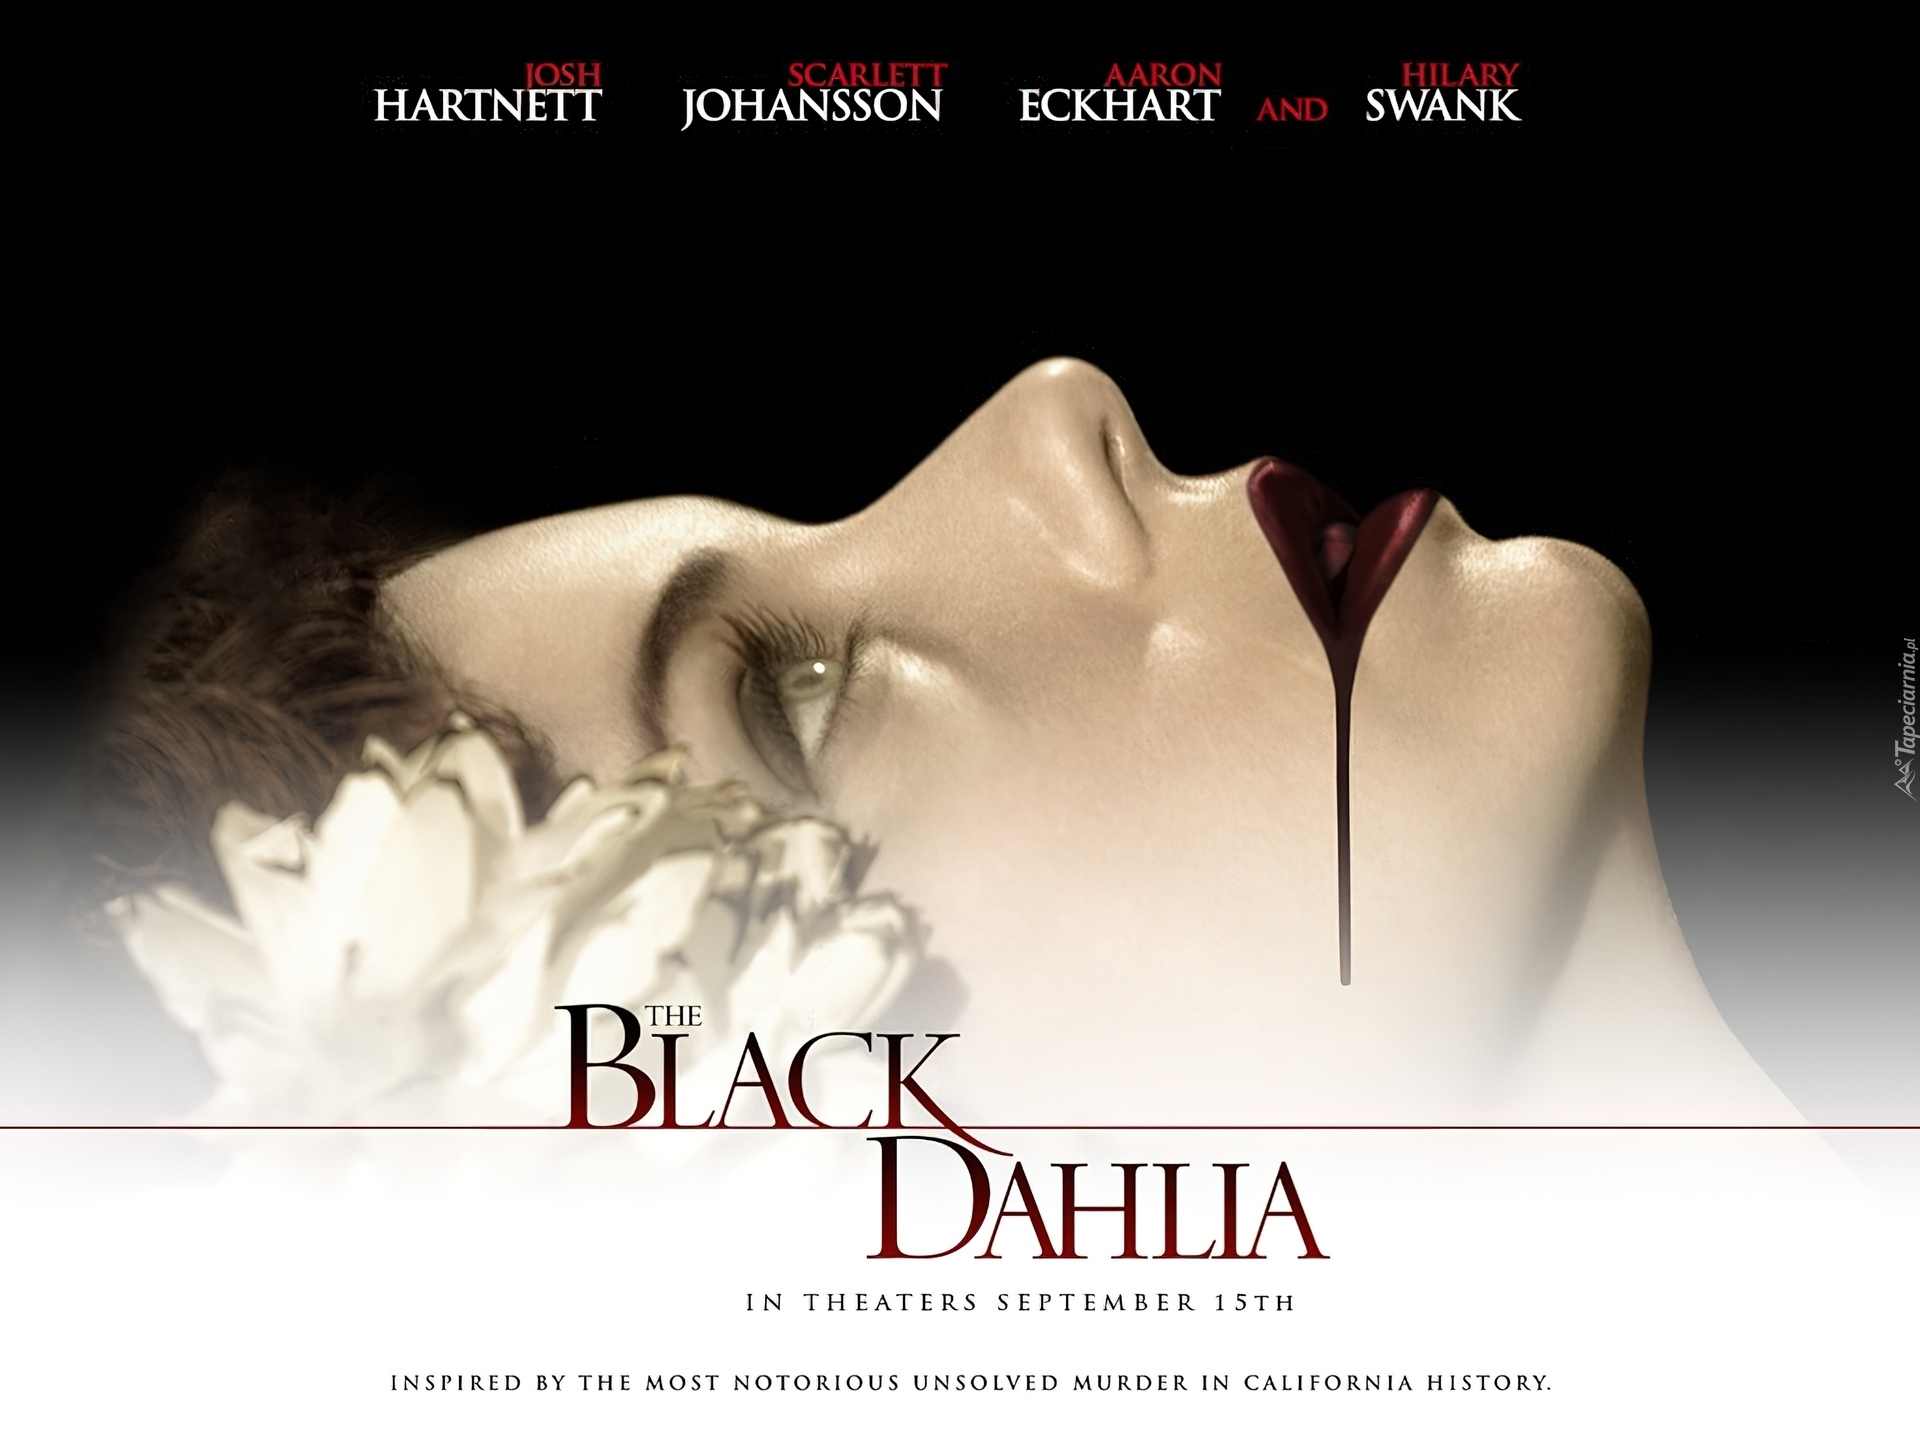 Black Dahlia, twarz, kobiety, szminka